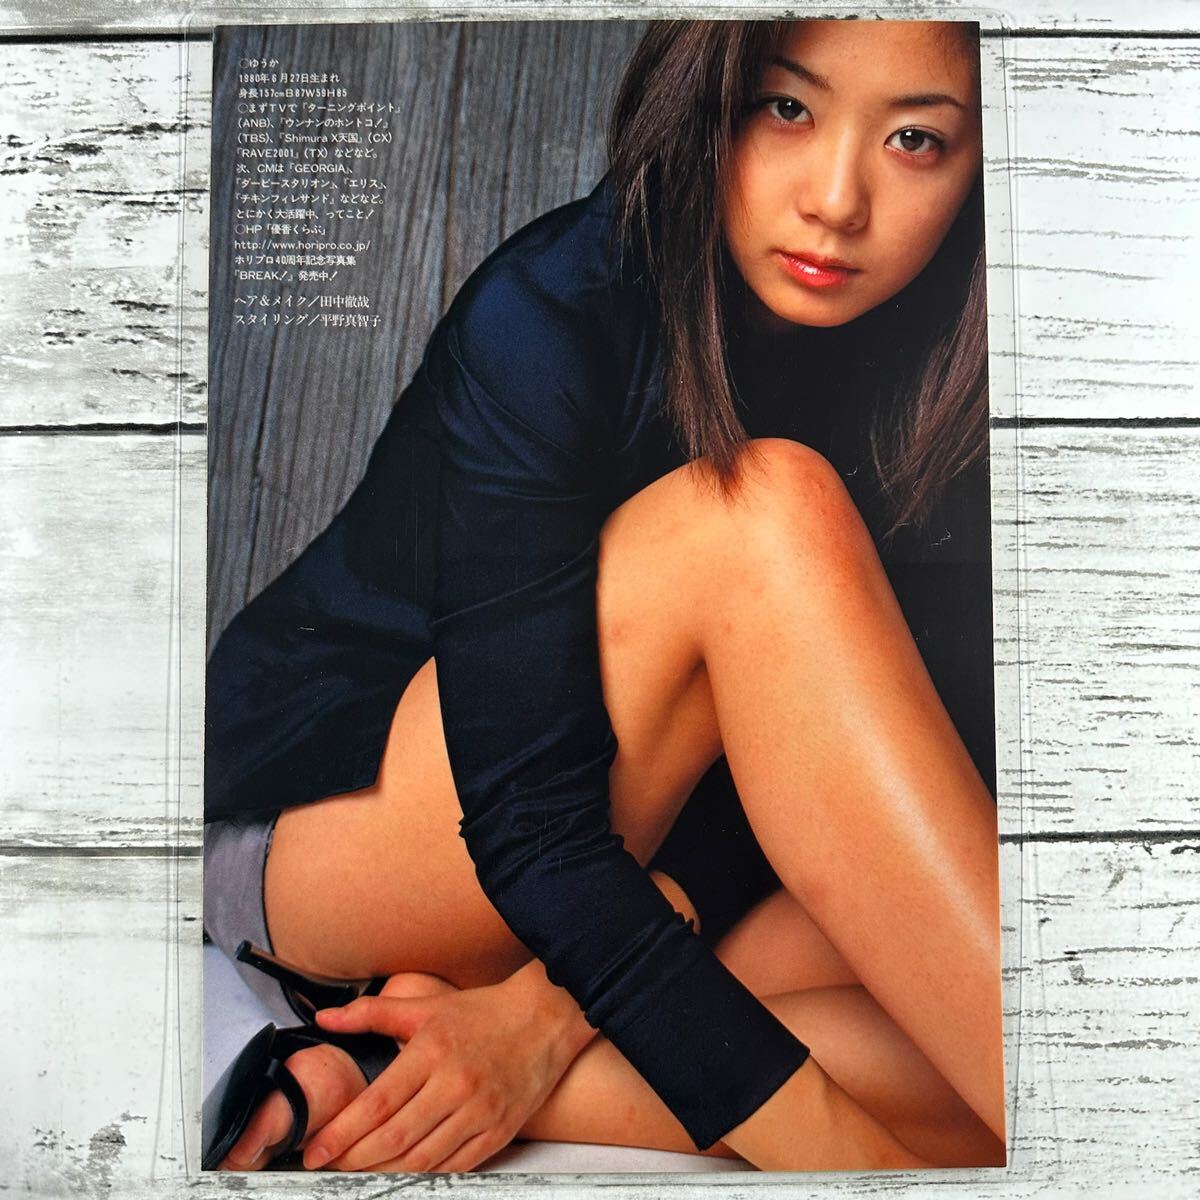 [ высокое качество ламинирование отделка ][ Yuuka ] Play Boy 2000 год 1 номер журнал вырезки 10P B5 плёнка купальный костюм bikini model актер женщина super 